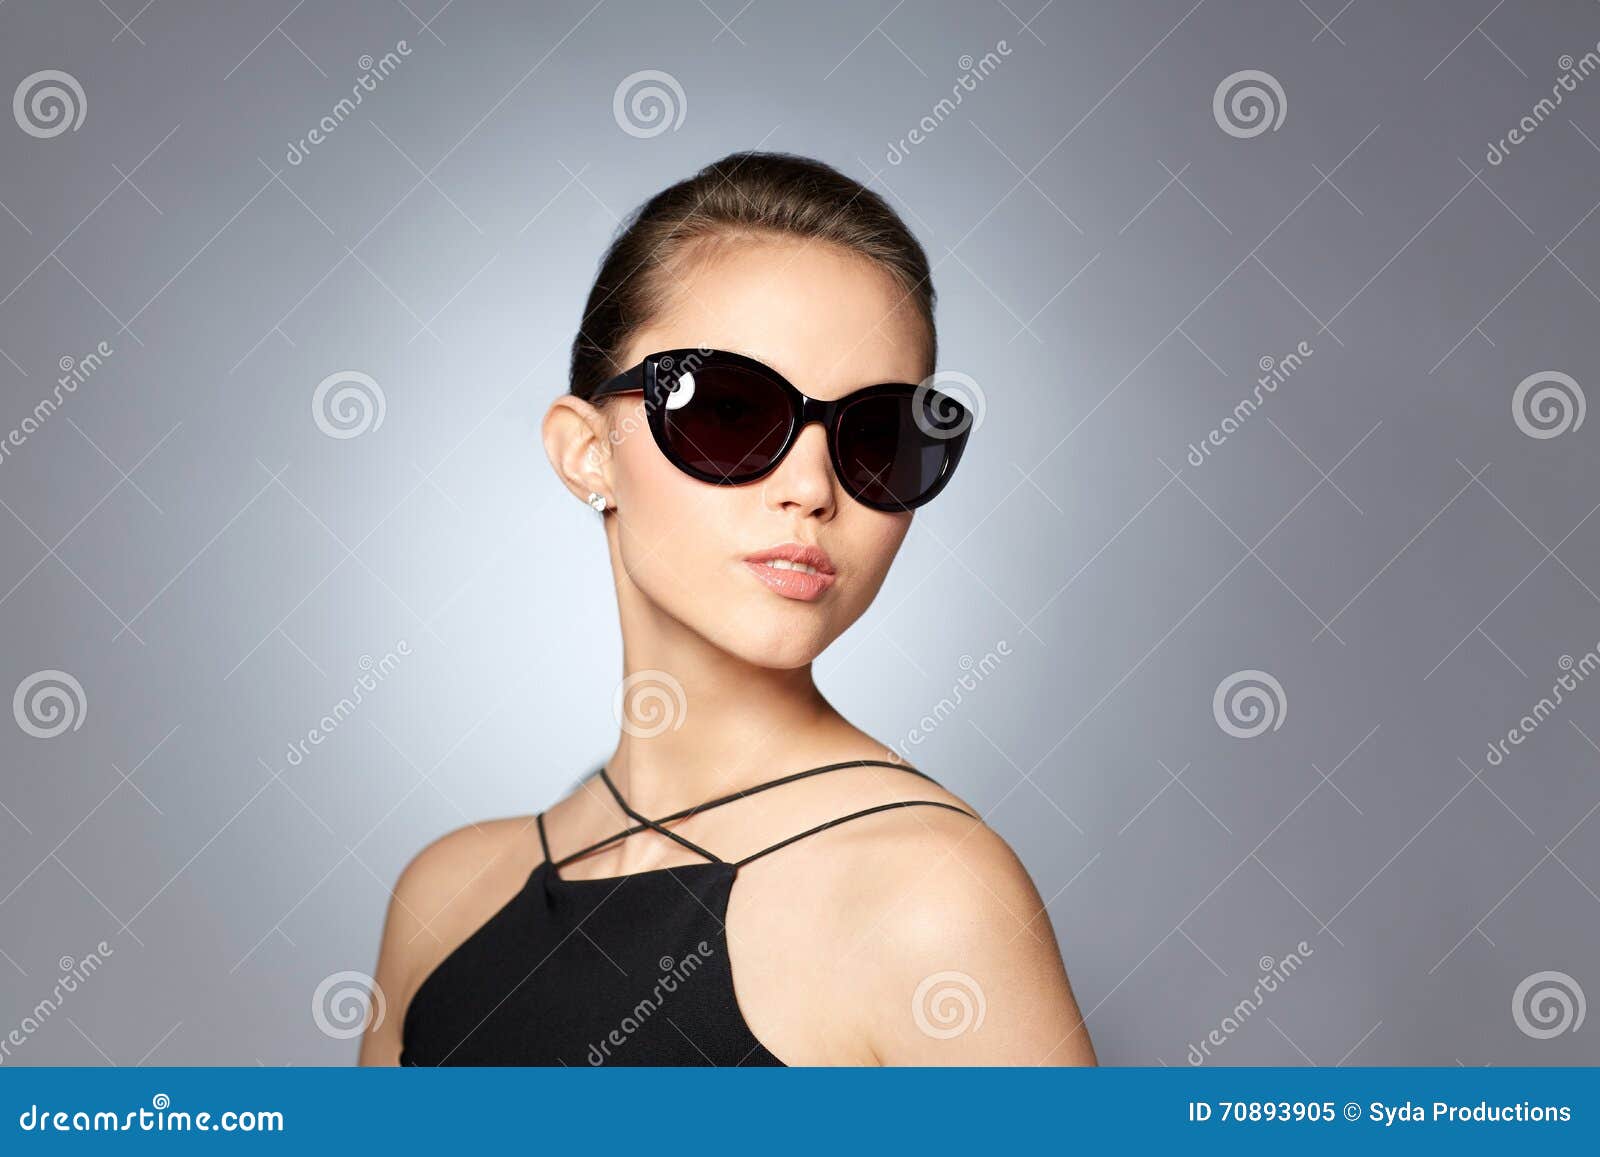 Mujer Joven Hermosa En Sol Negros Elegantes Imagen de archivo - Imagen de elegancia: 70893905